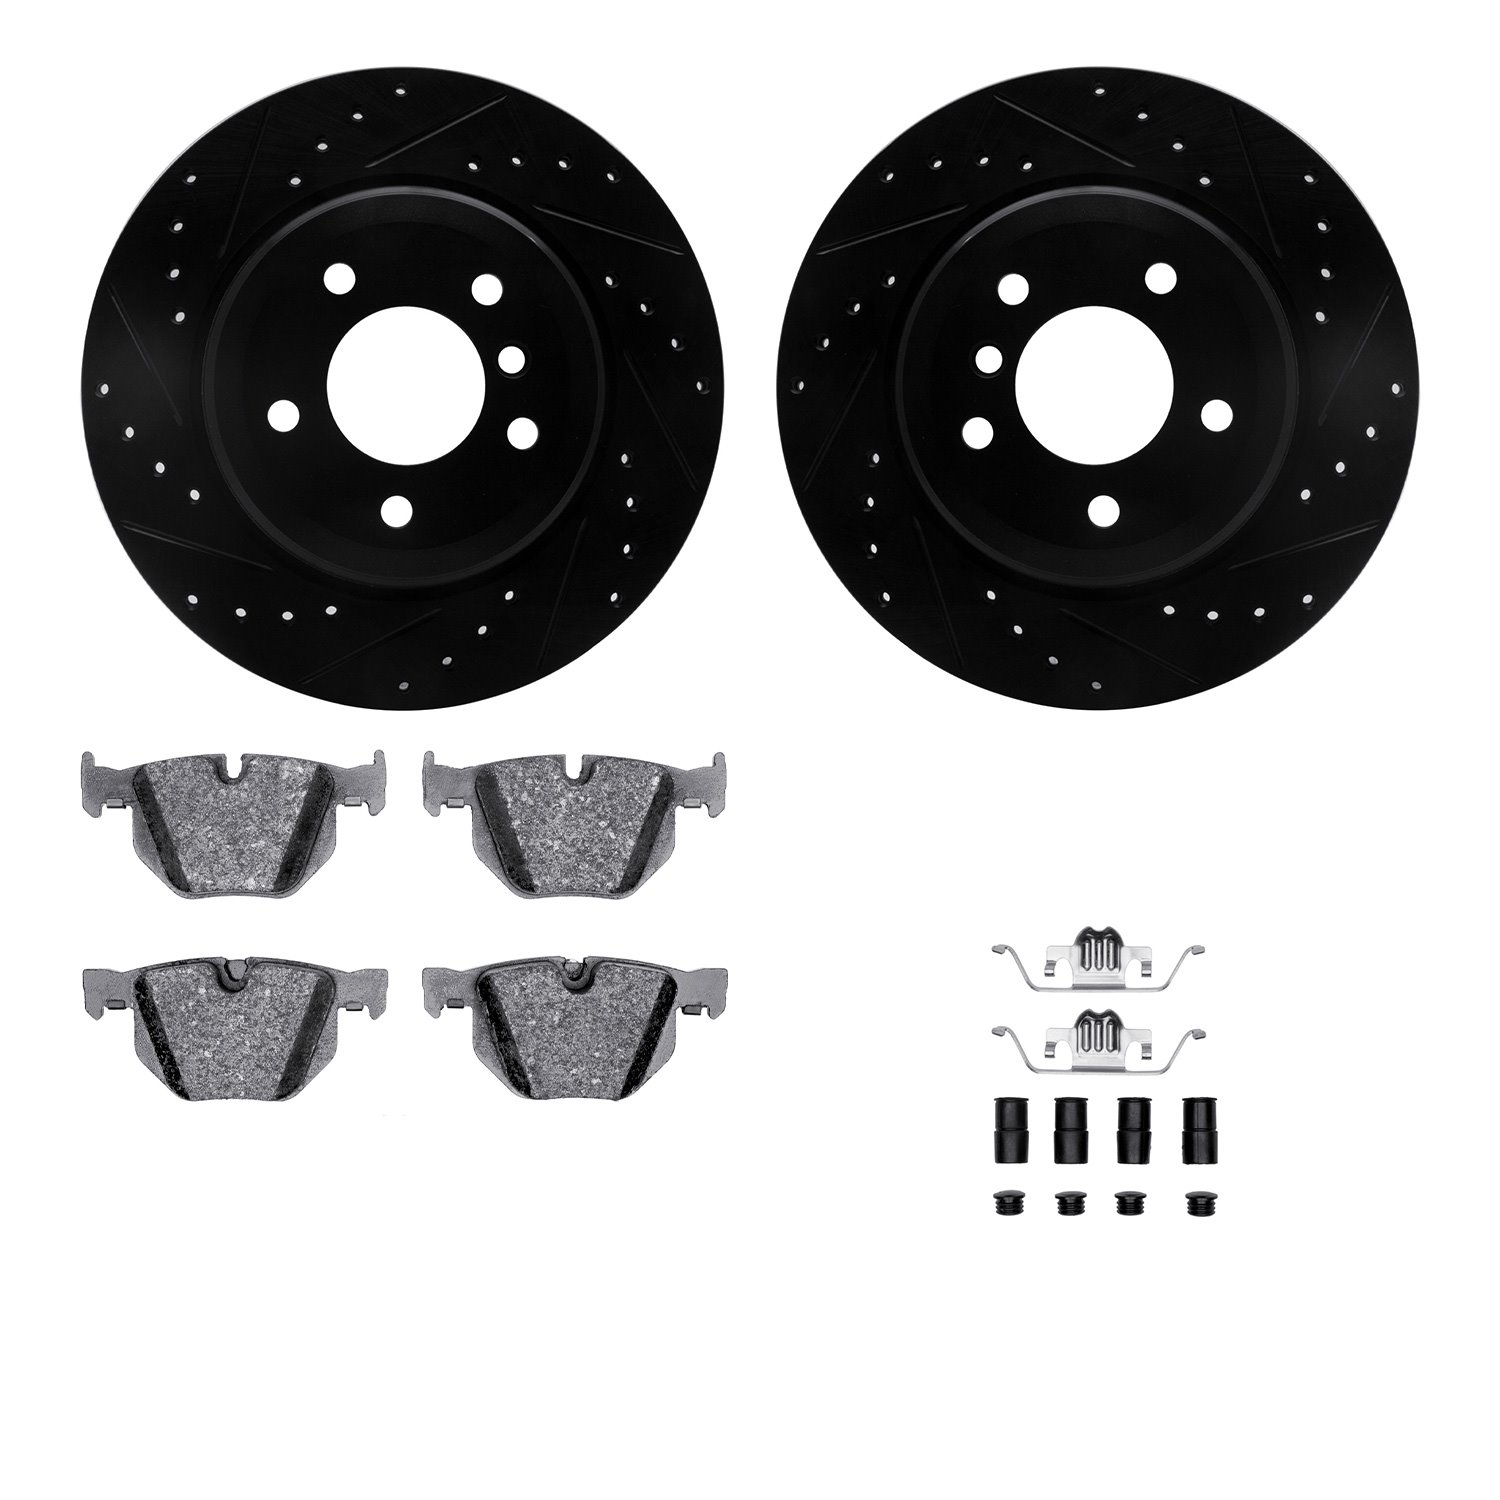 8612-31062 Drilled/Slotted Brake Rotors w/5000 Euro Ceramic Brake Pads Kit & Hardware [Black], 2004-2010 BMW, Position: Rear